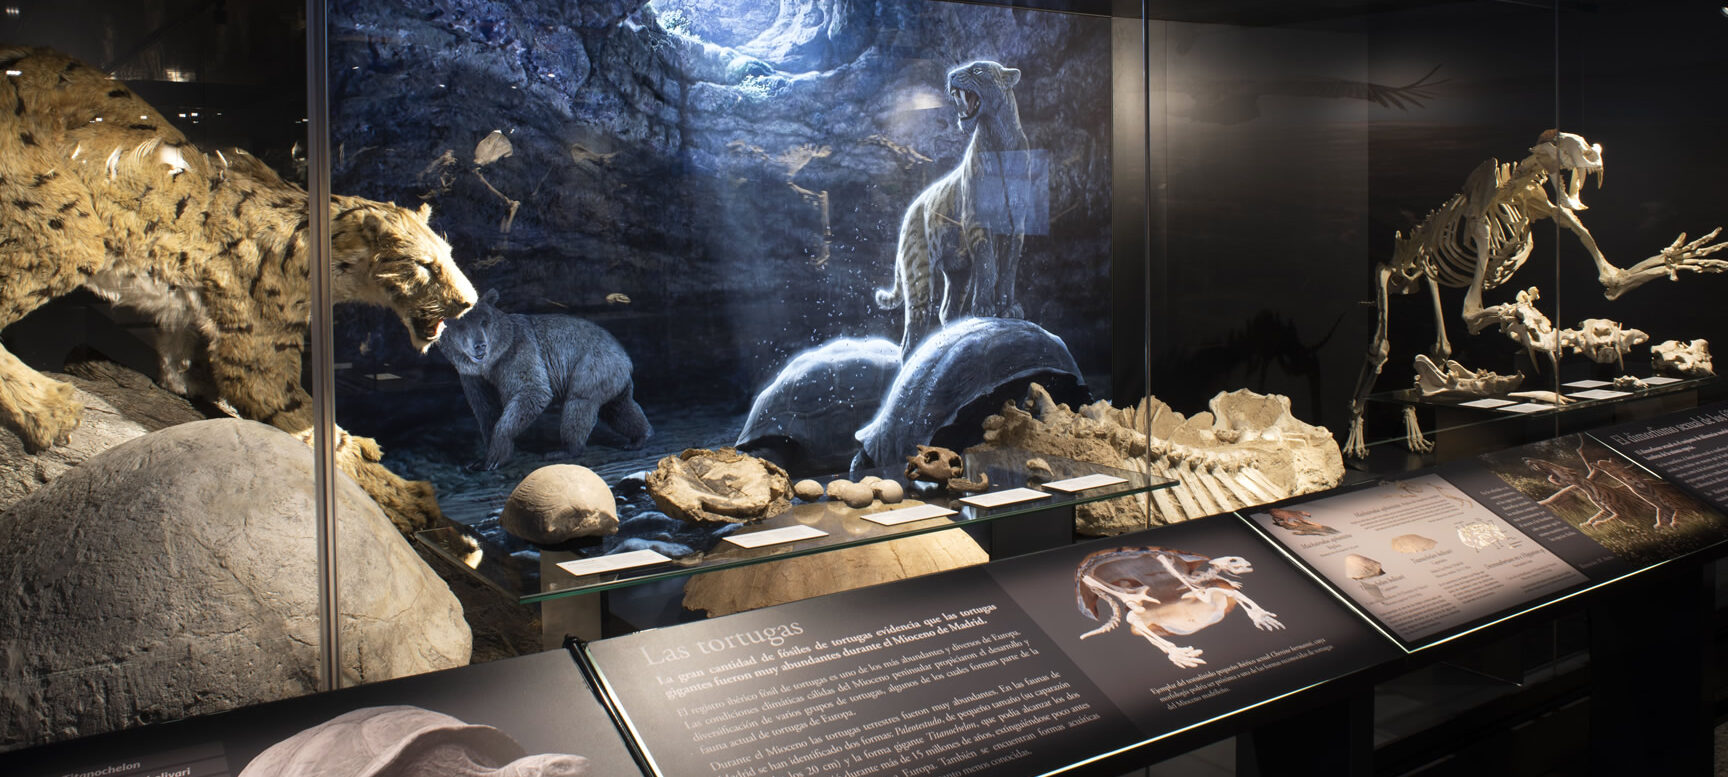 Museo Arqueológico y Paleontológico de la Comunidad de Madrid		Alcalá de Henares	Madrid	Museo